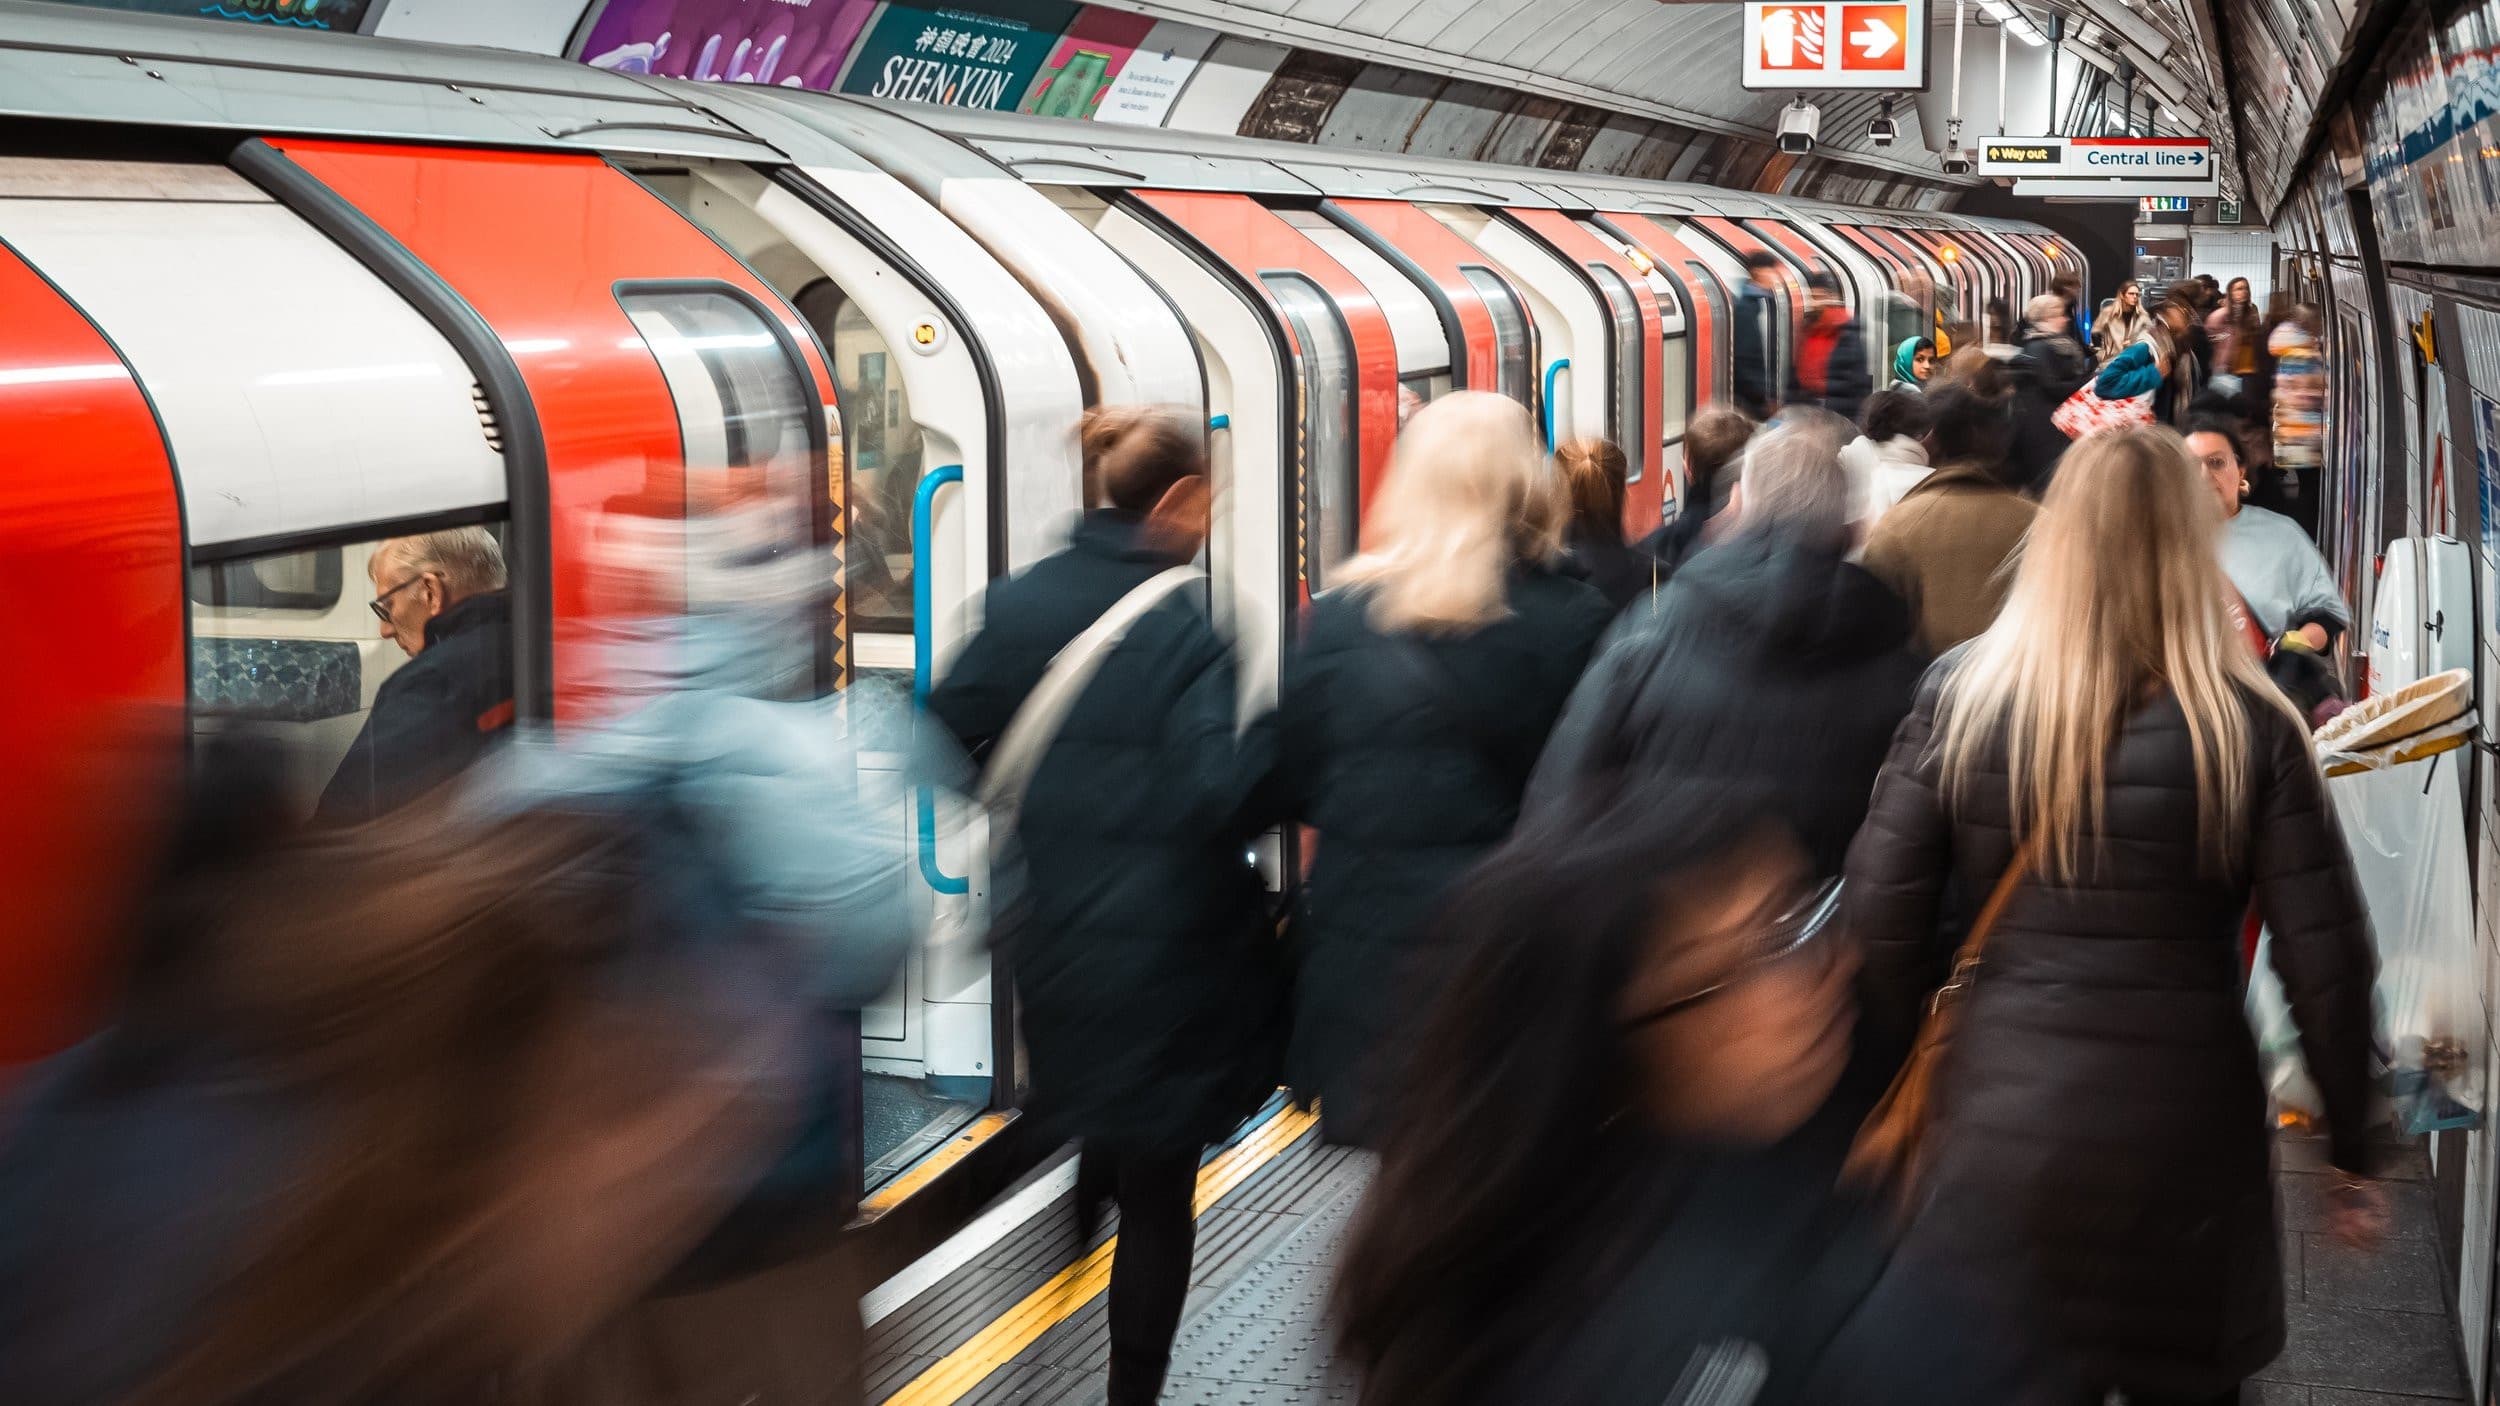 The Tube: Keep London Moving! - Season 1 Episode 4